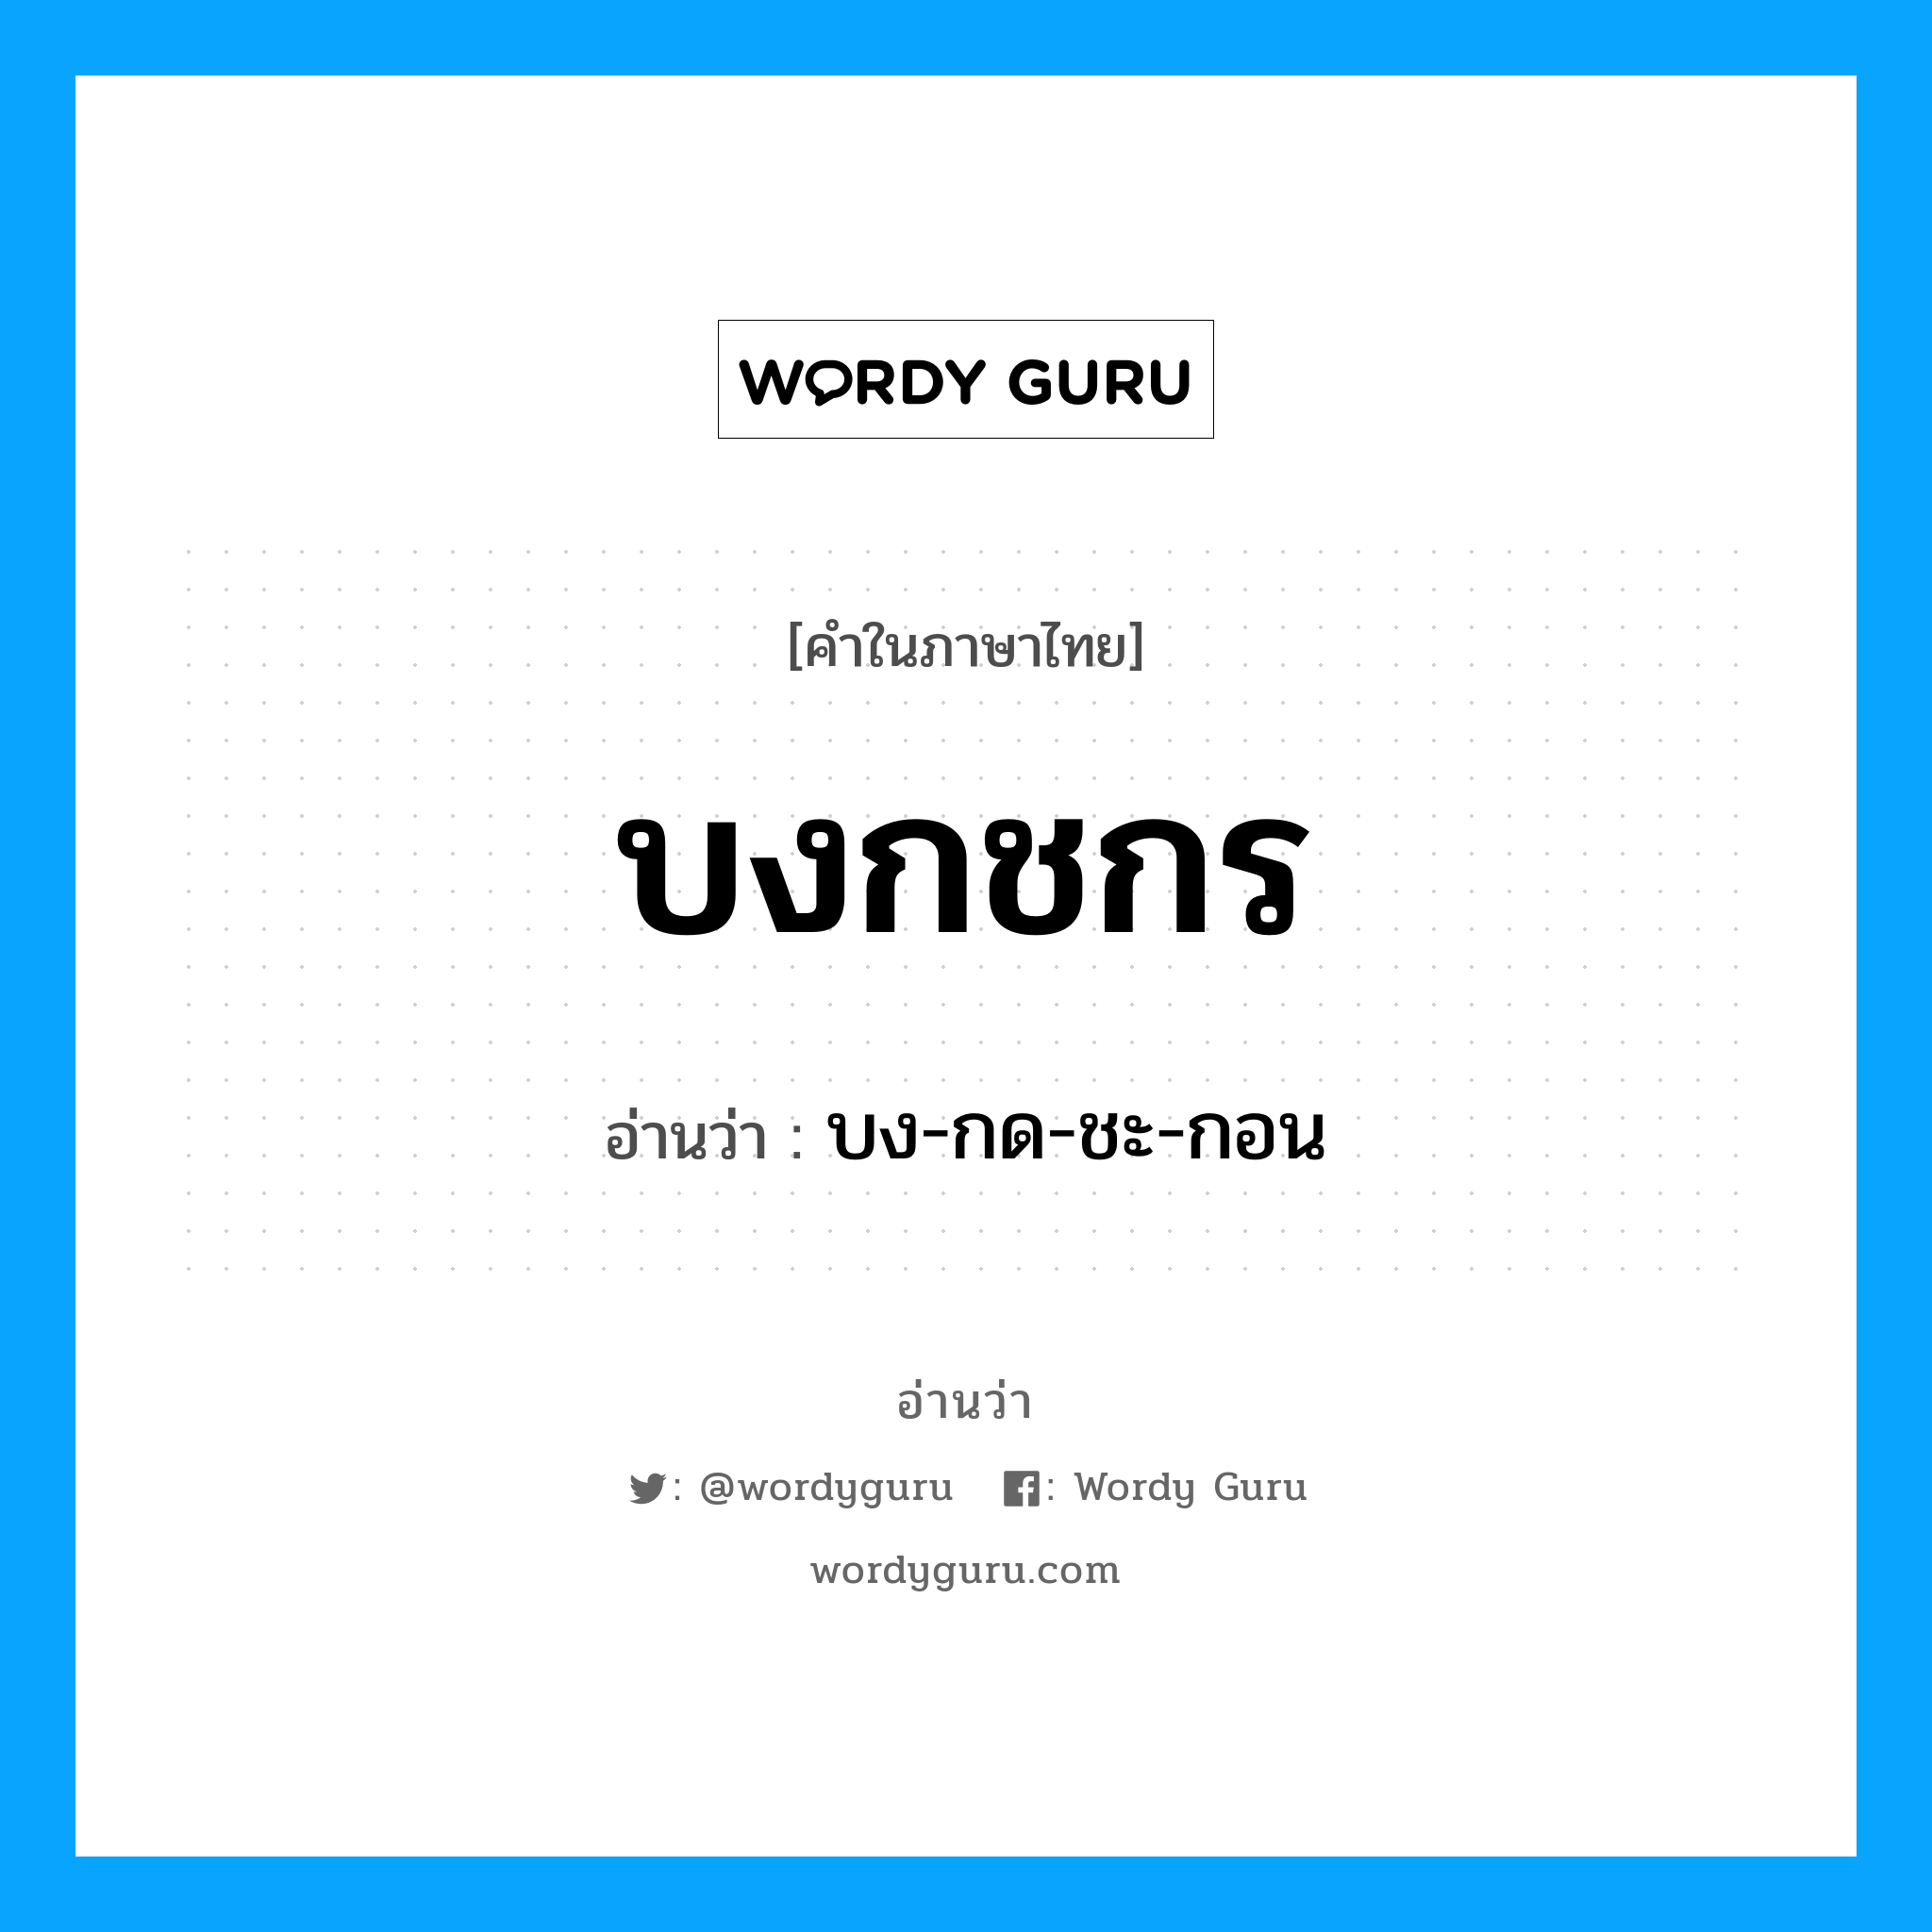 บง-กด-ชะ-กอน เป็นคำอ่านของคำไหน?, คำในภาษาไทย บง-กด-ชะ-กอน อ่านว่า บงกชกร